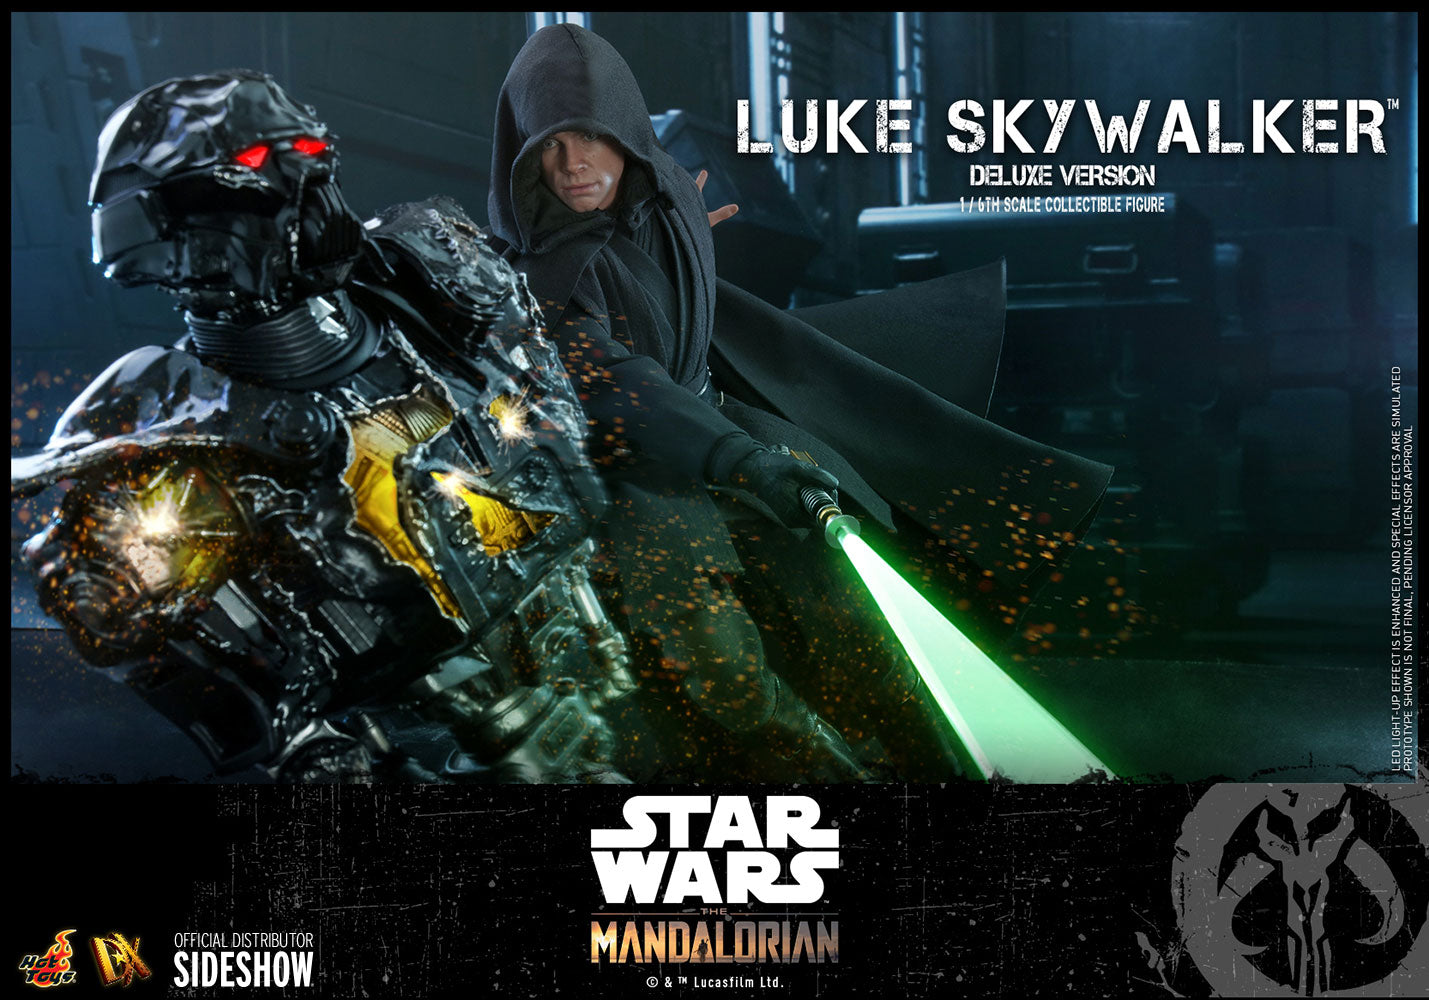 Hot Toys Star Wars The Mandalorian Luke Skywalker Deluxe Version